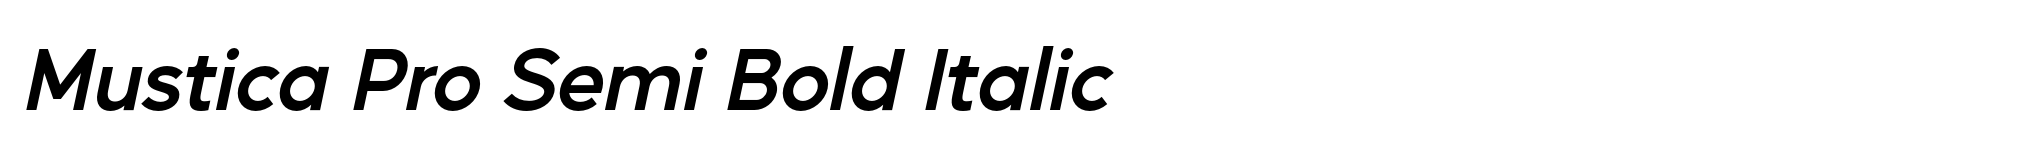 Mustica Pro Semi Bold Italic image